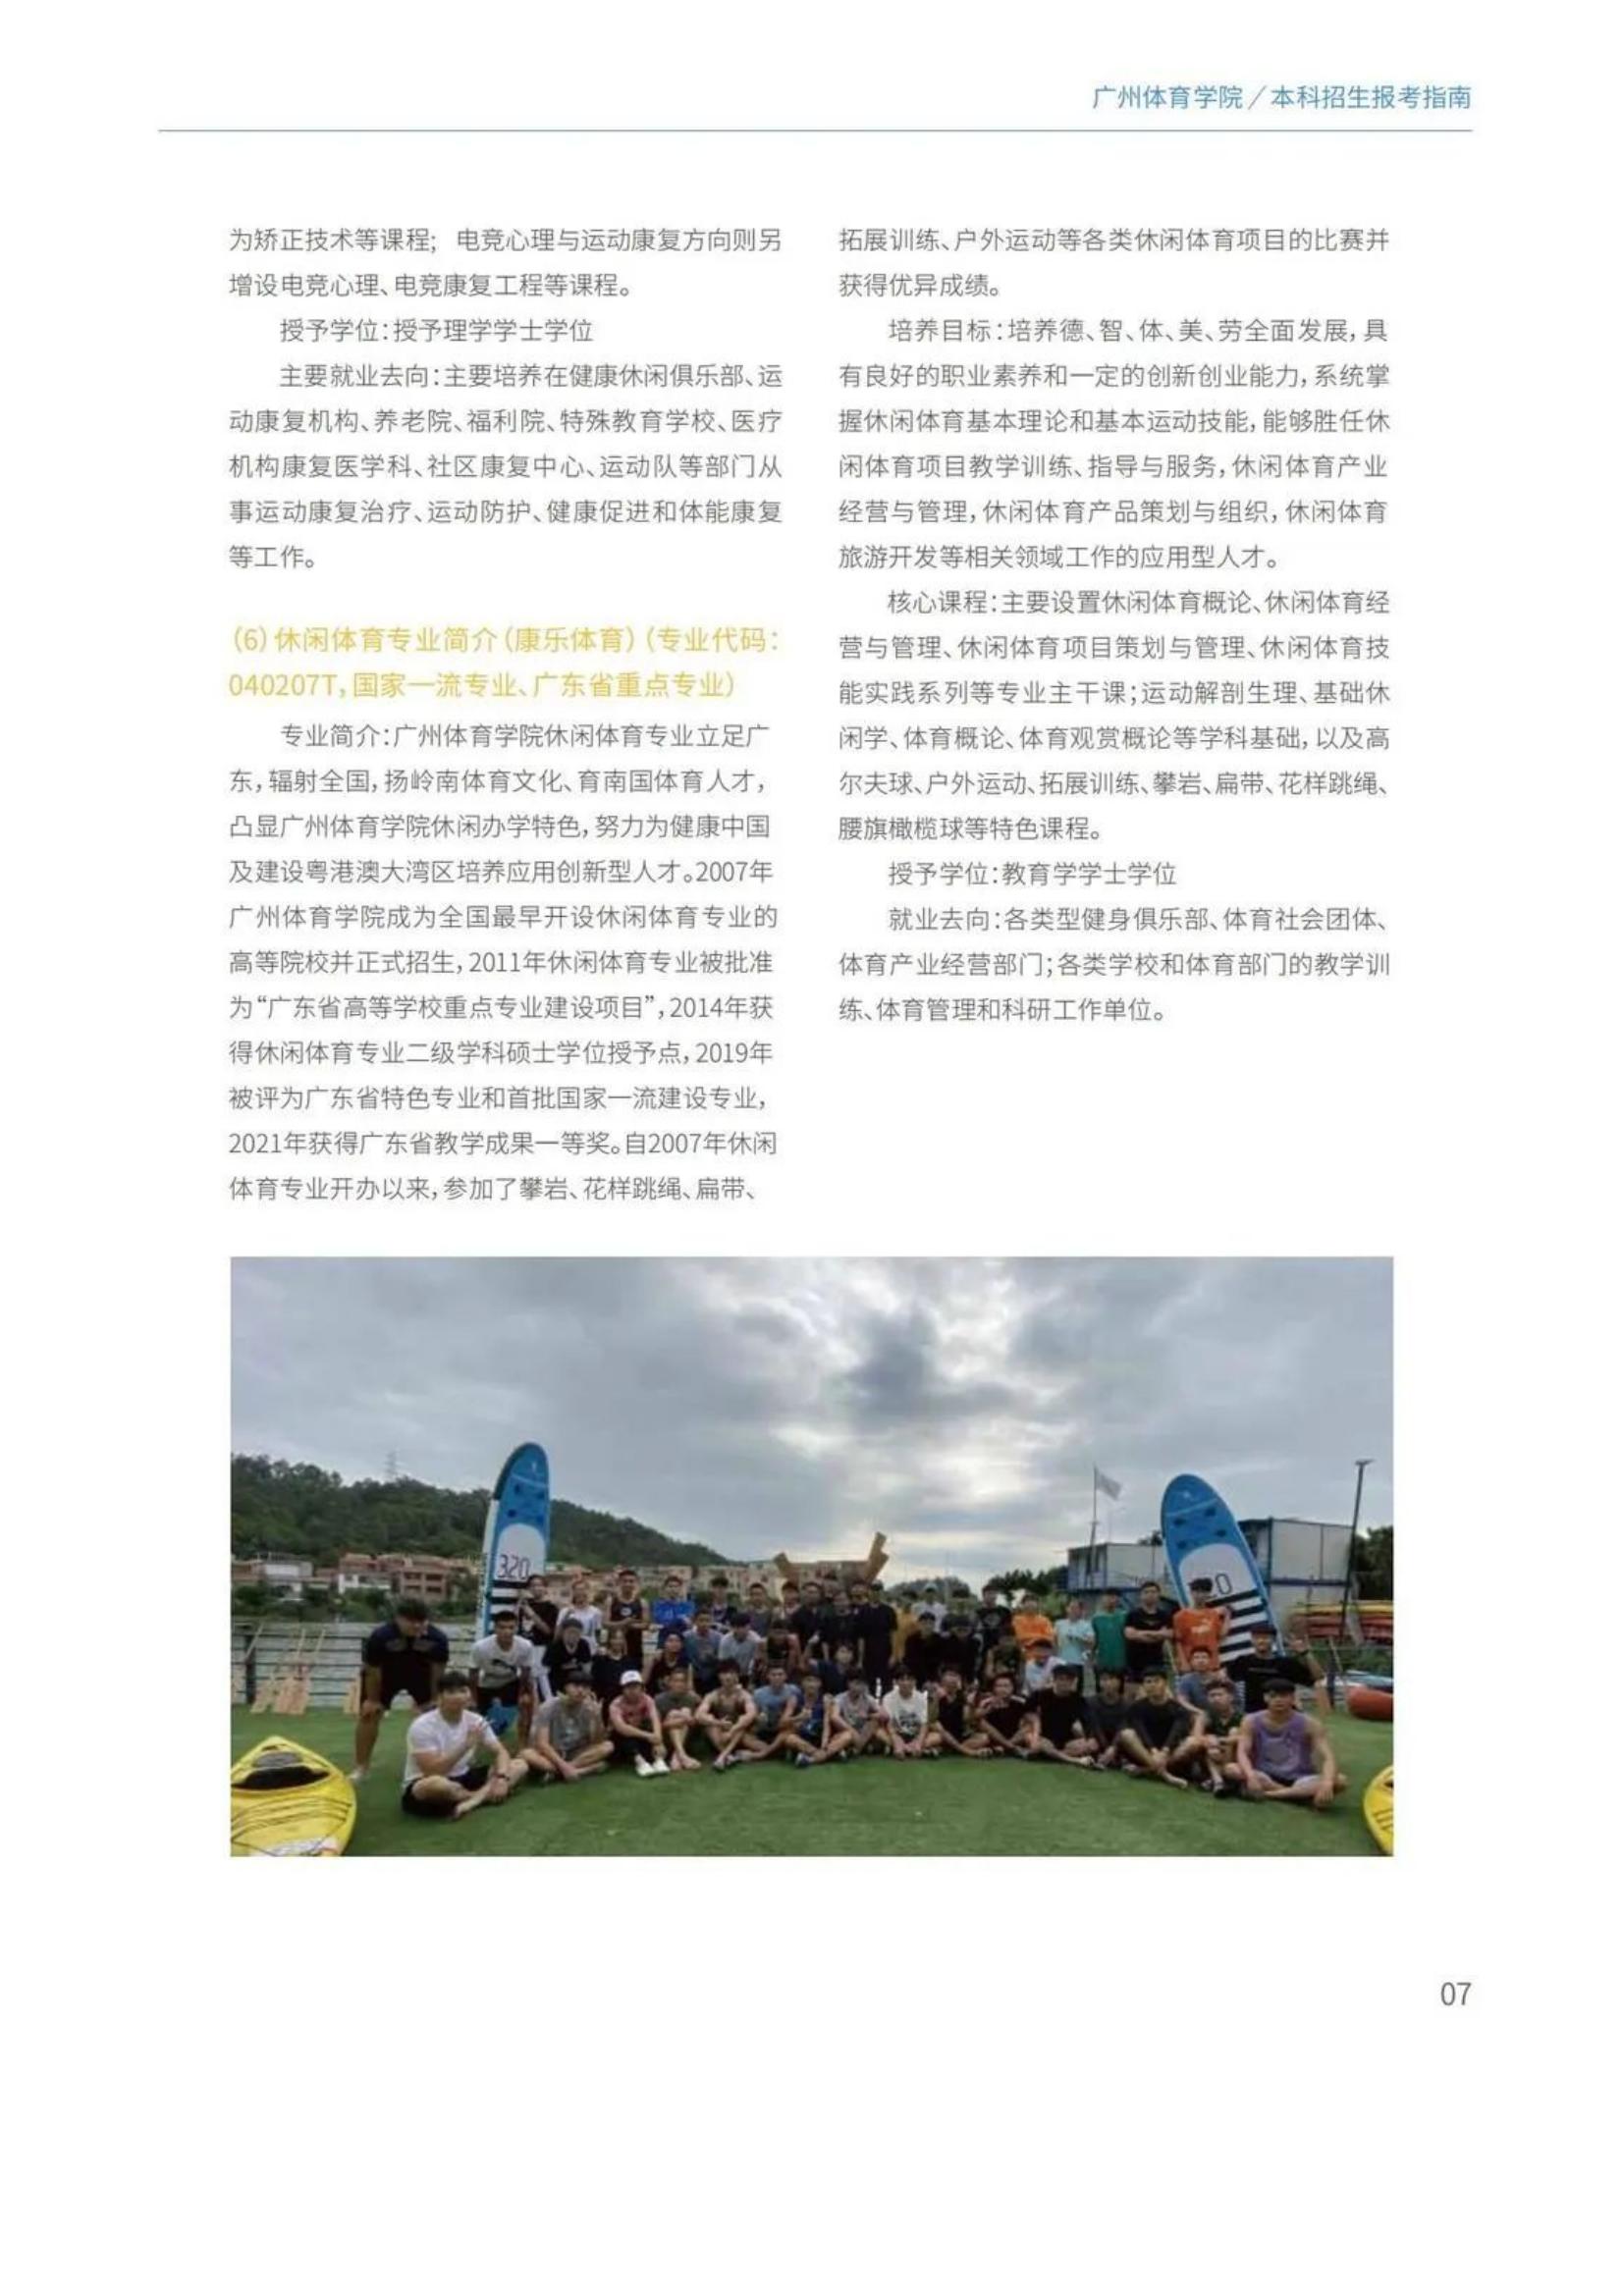 广州体育学院2022年报考指南发布_09.jpg